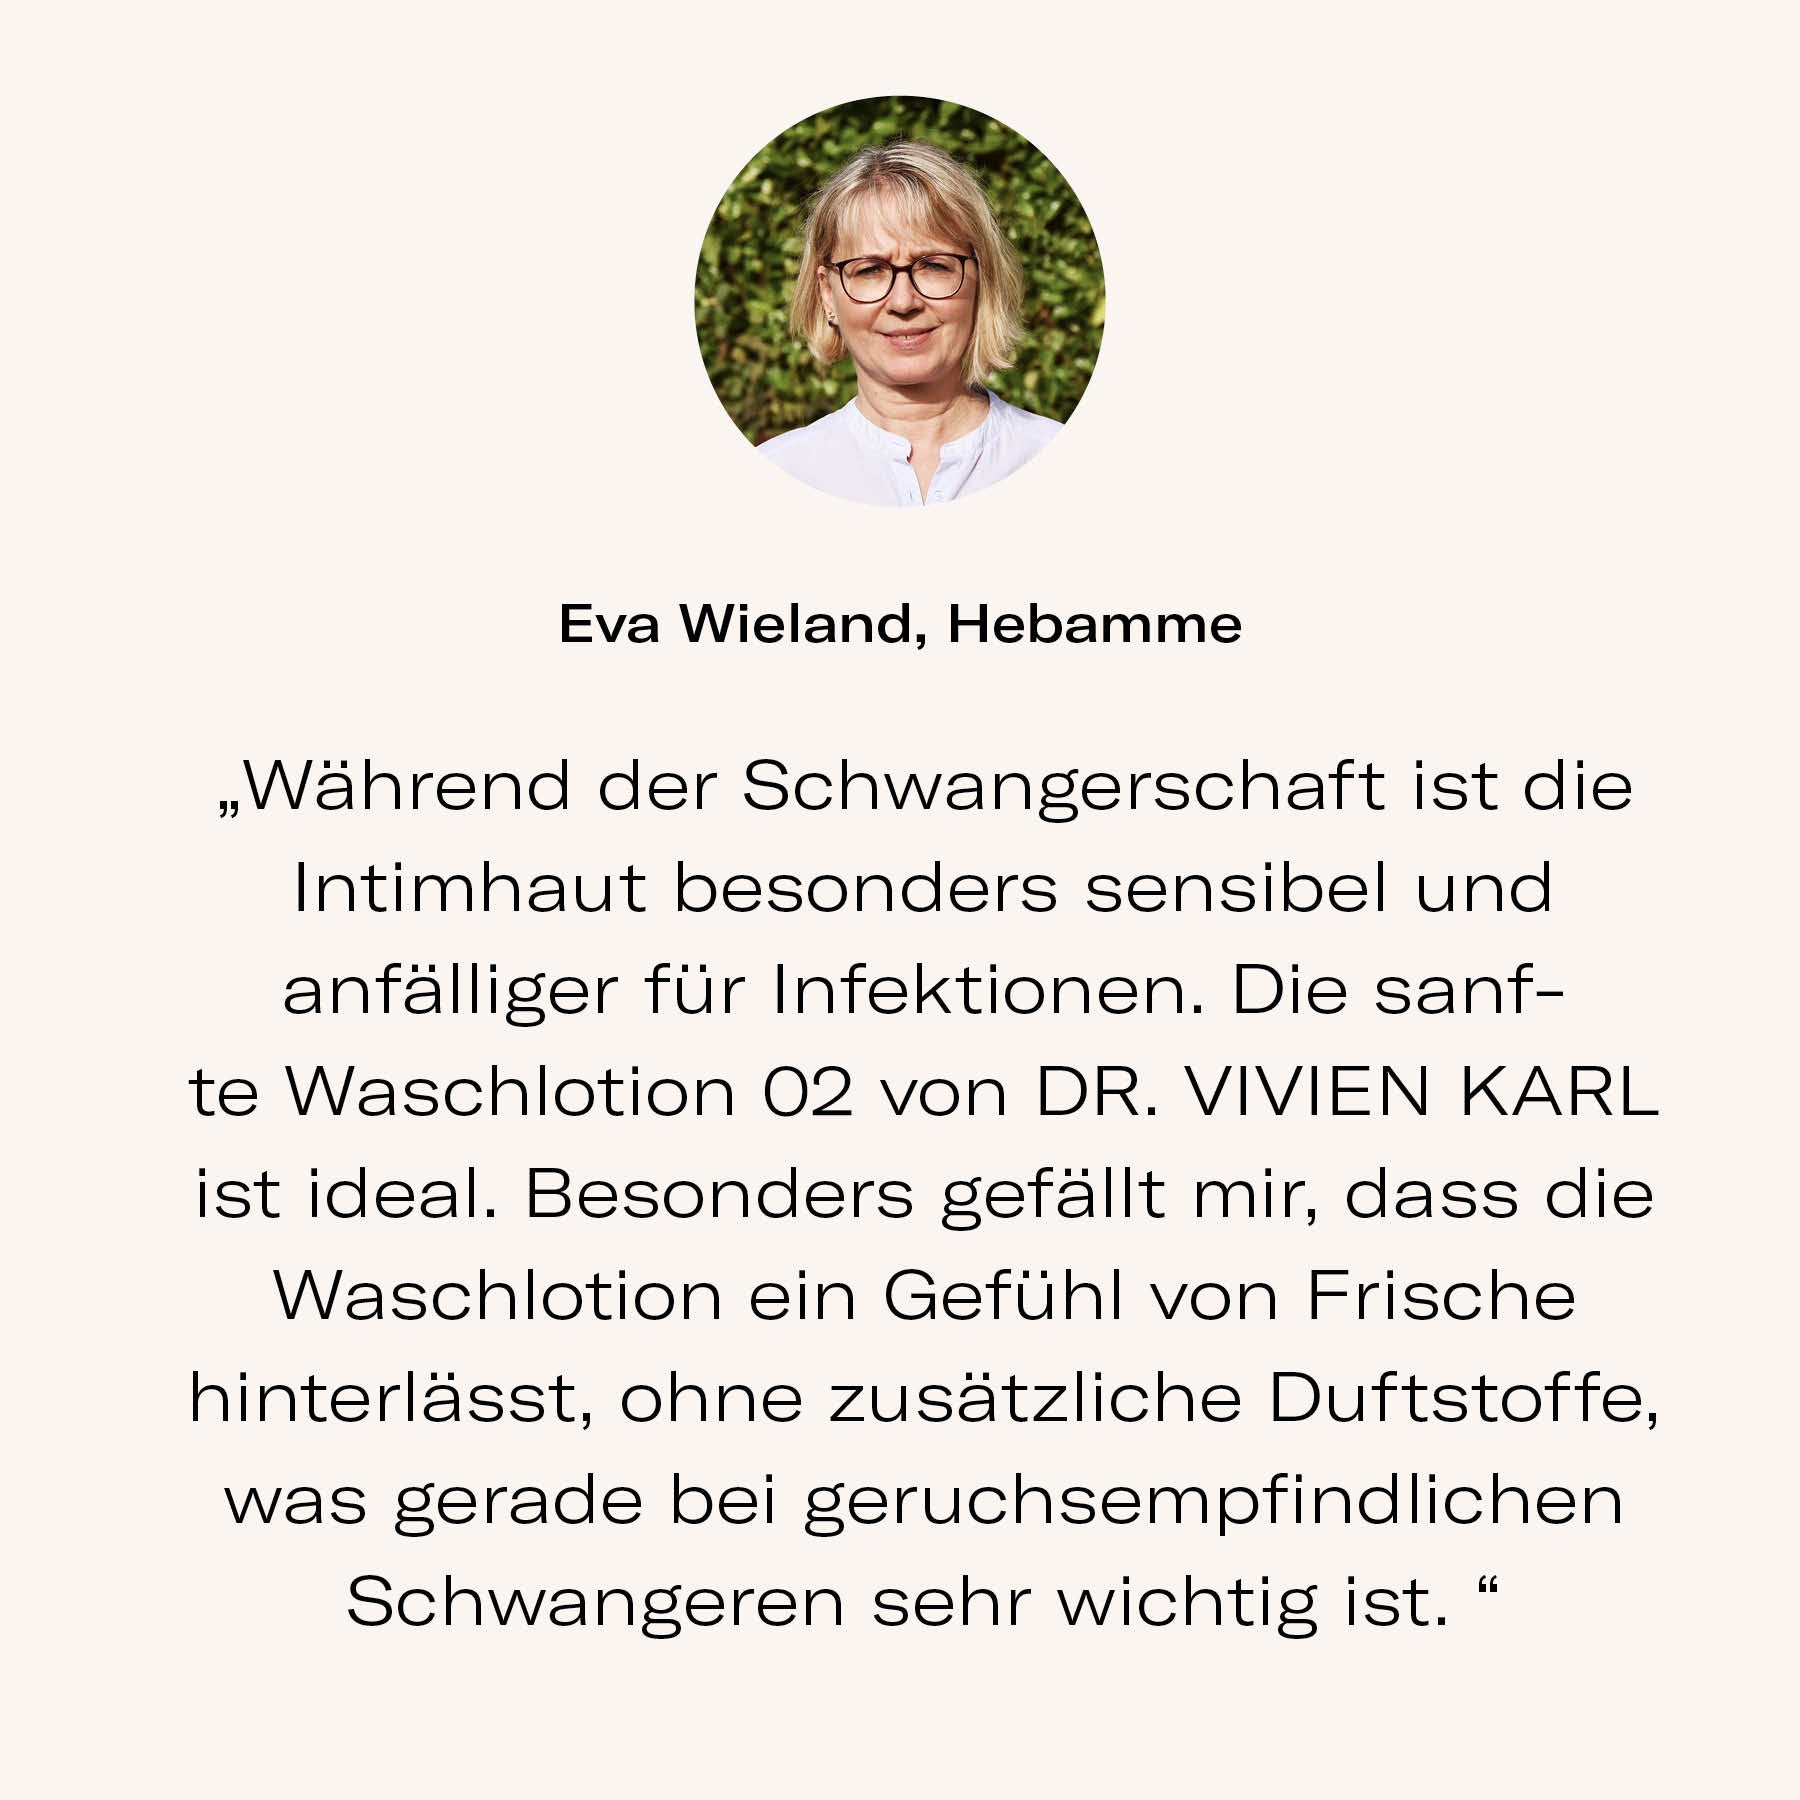 Hebamme Eva Wieland empfiehlt Intimwaschlotion 02 von DR. VIVIEN KARL